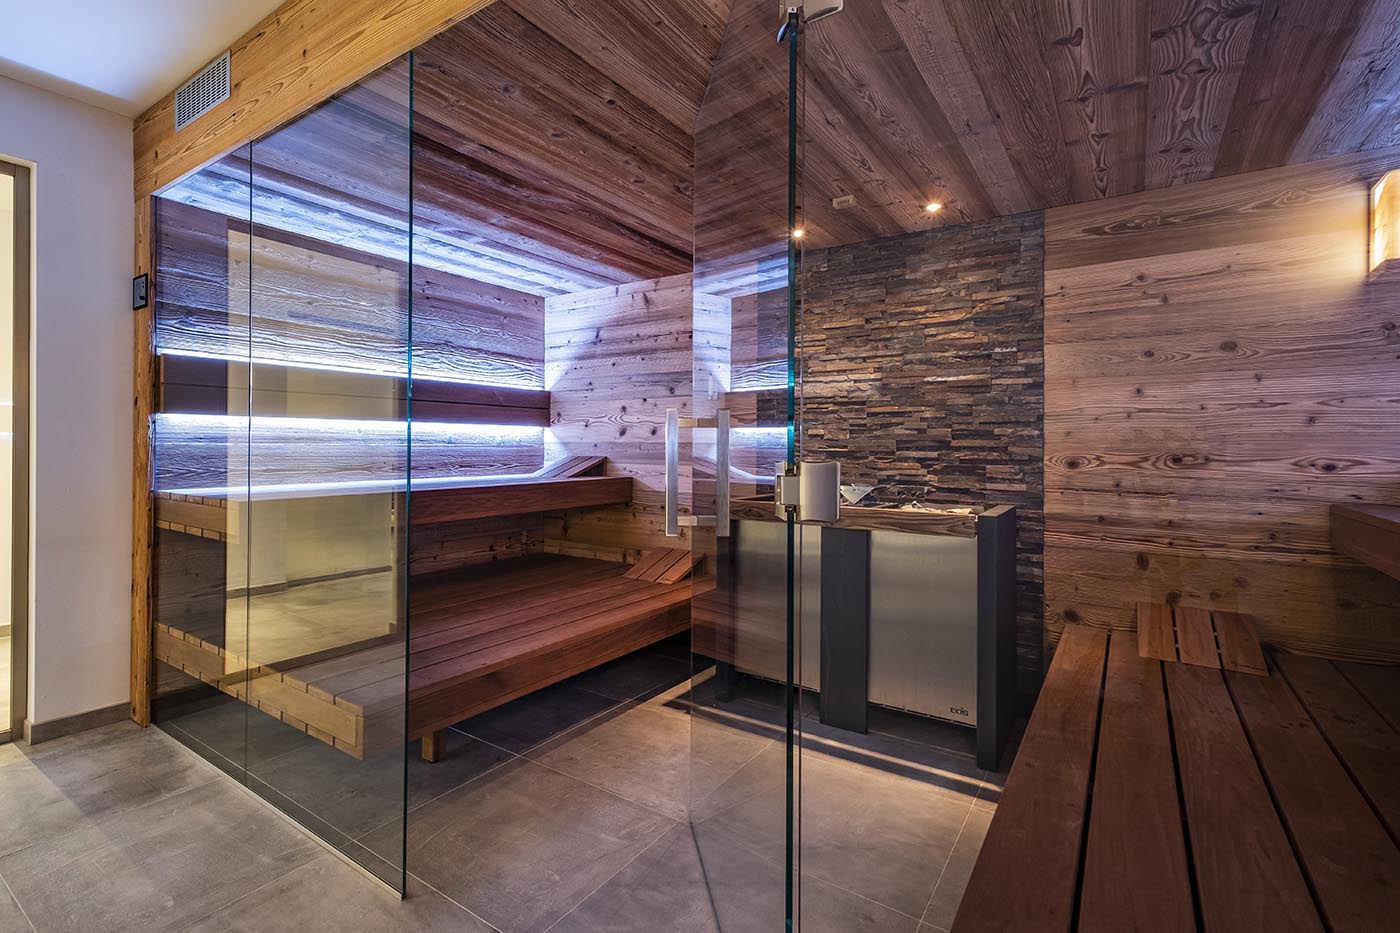 Altholz Sauna mit Glasfront: gemütlich und urig. Perfekt, um in der Sauna zu entspannen und etwas für die eigene Gesundheit zu tun.